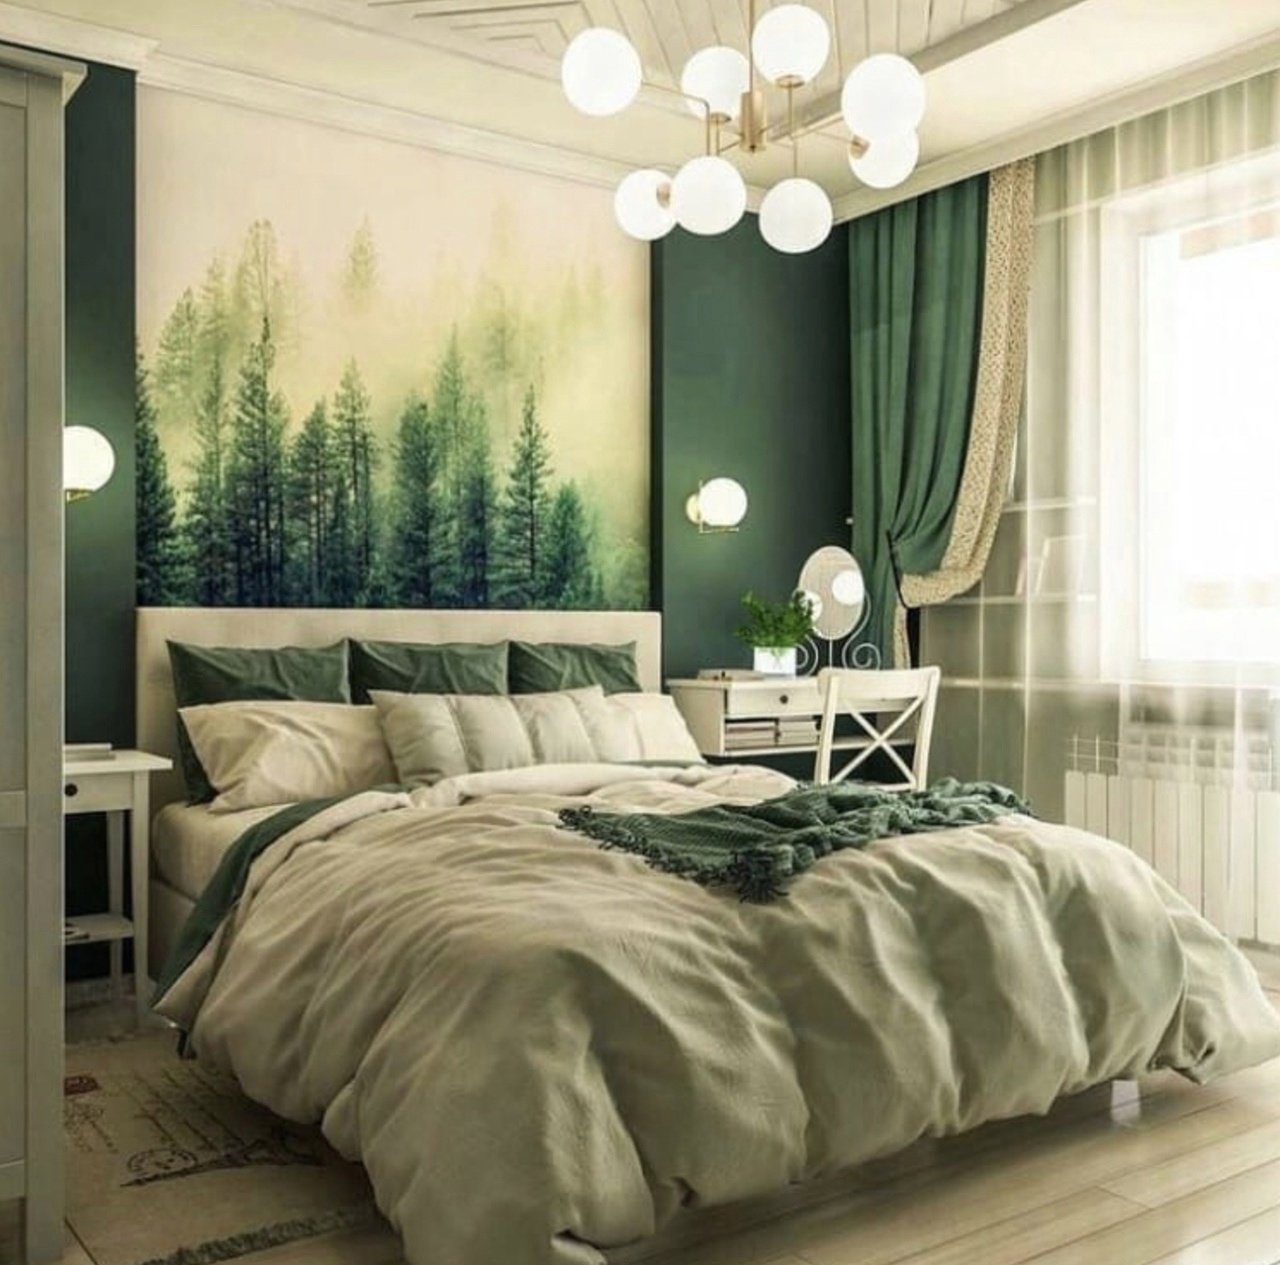 Спальня в зеленых тонах - 74 фото